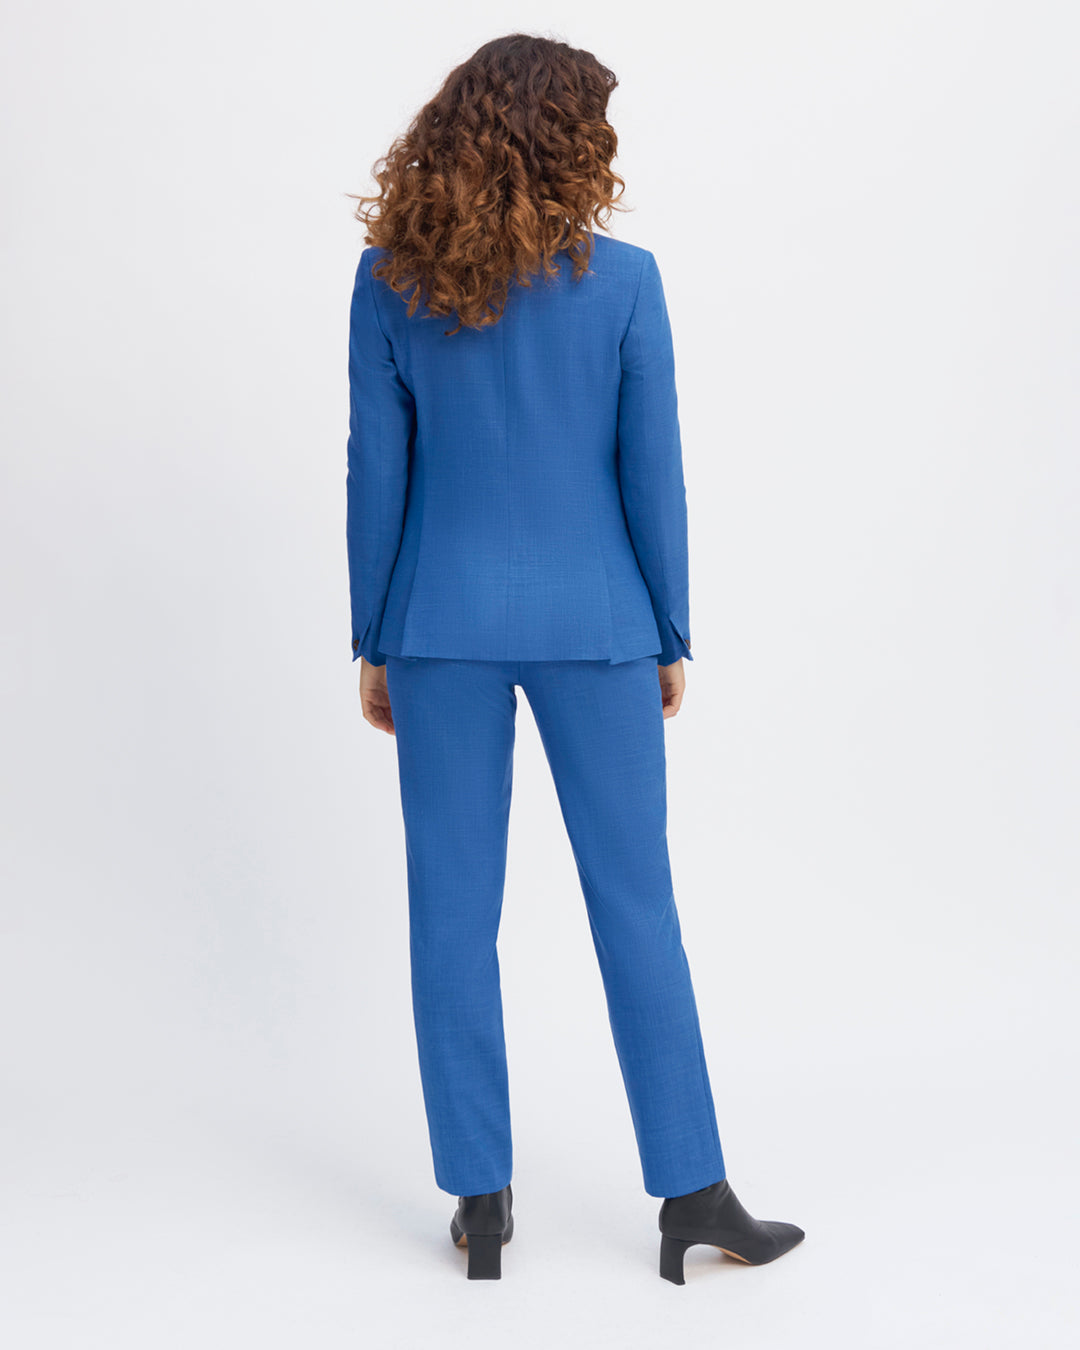 17H10-women's-waistcoats-paris-carrot-cut-high-waist-fold-front-7-8th-length-zipper-front.